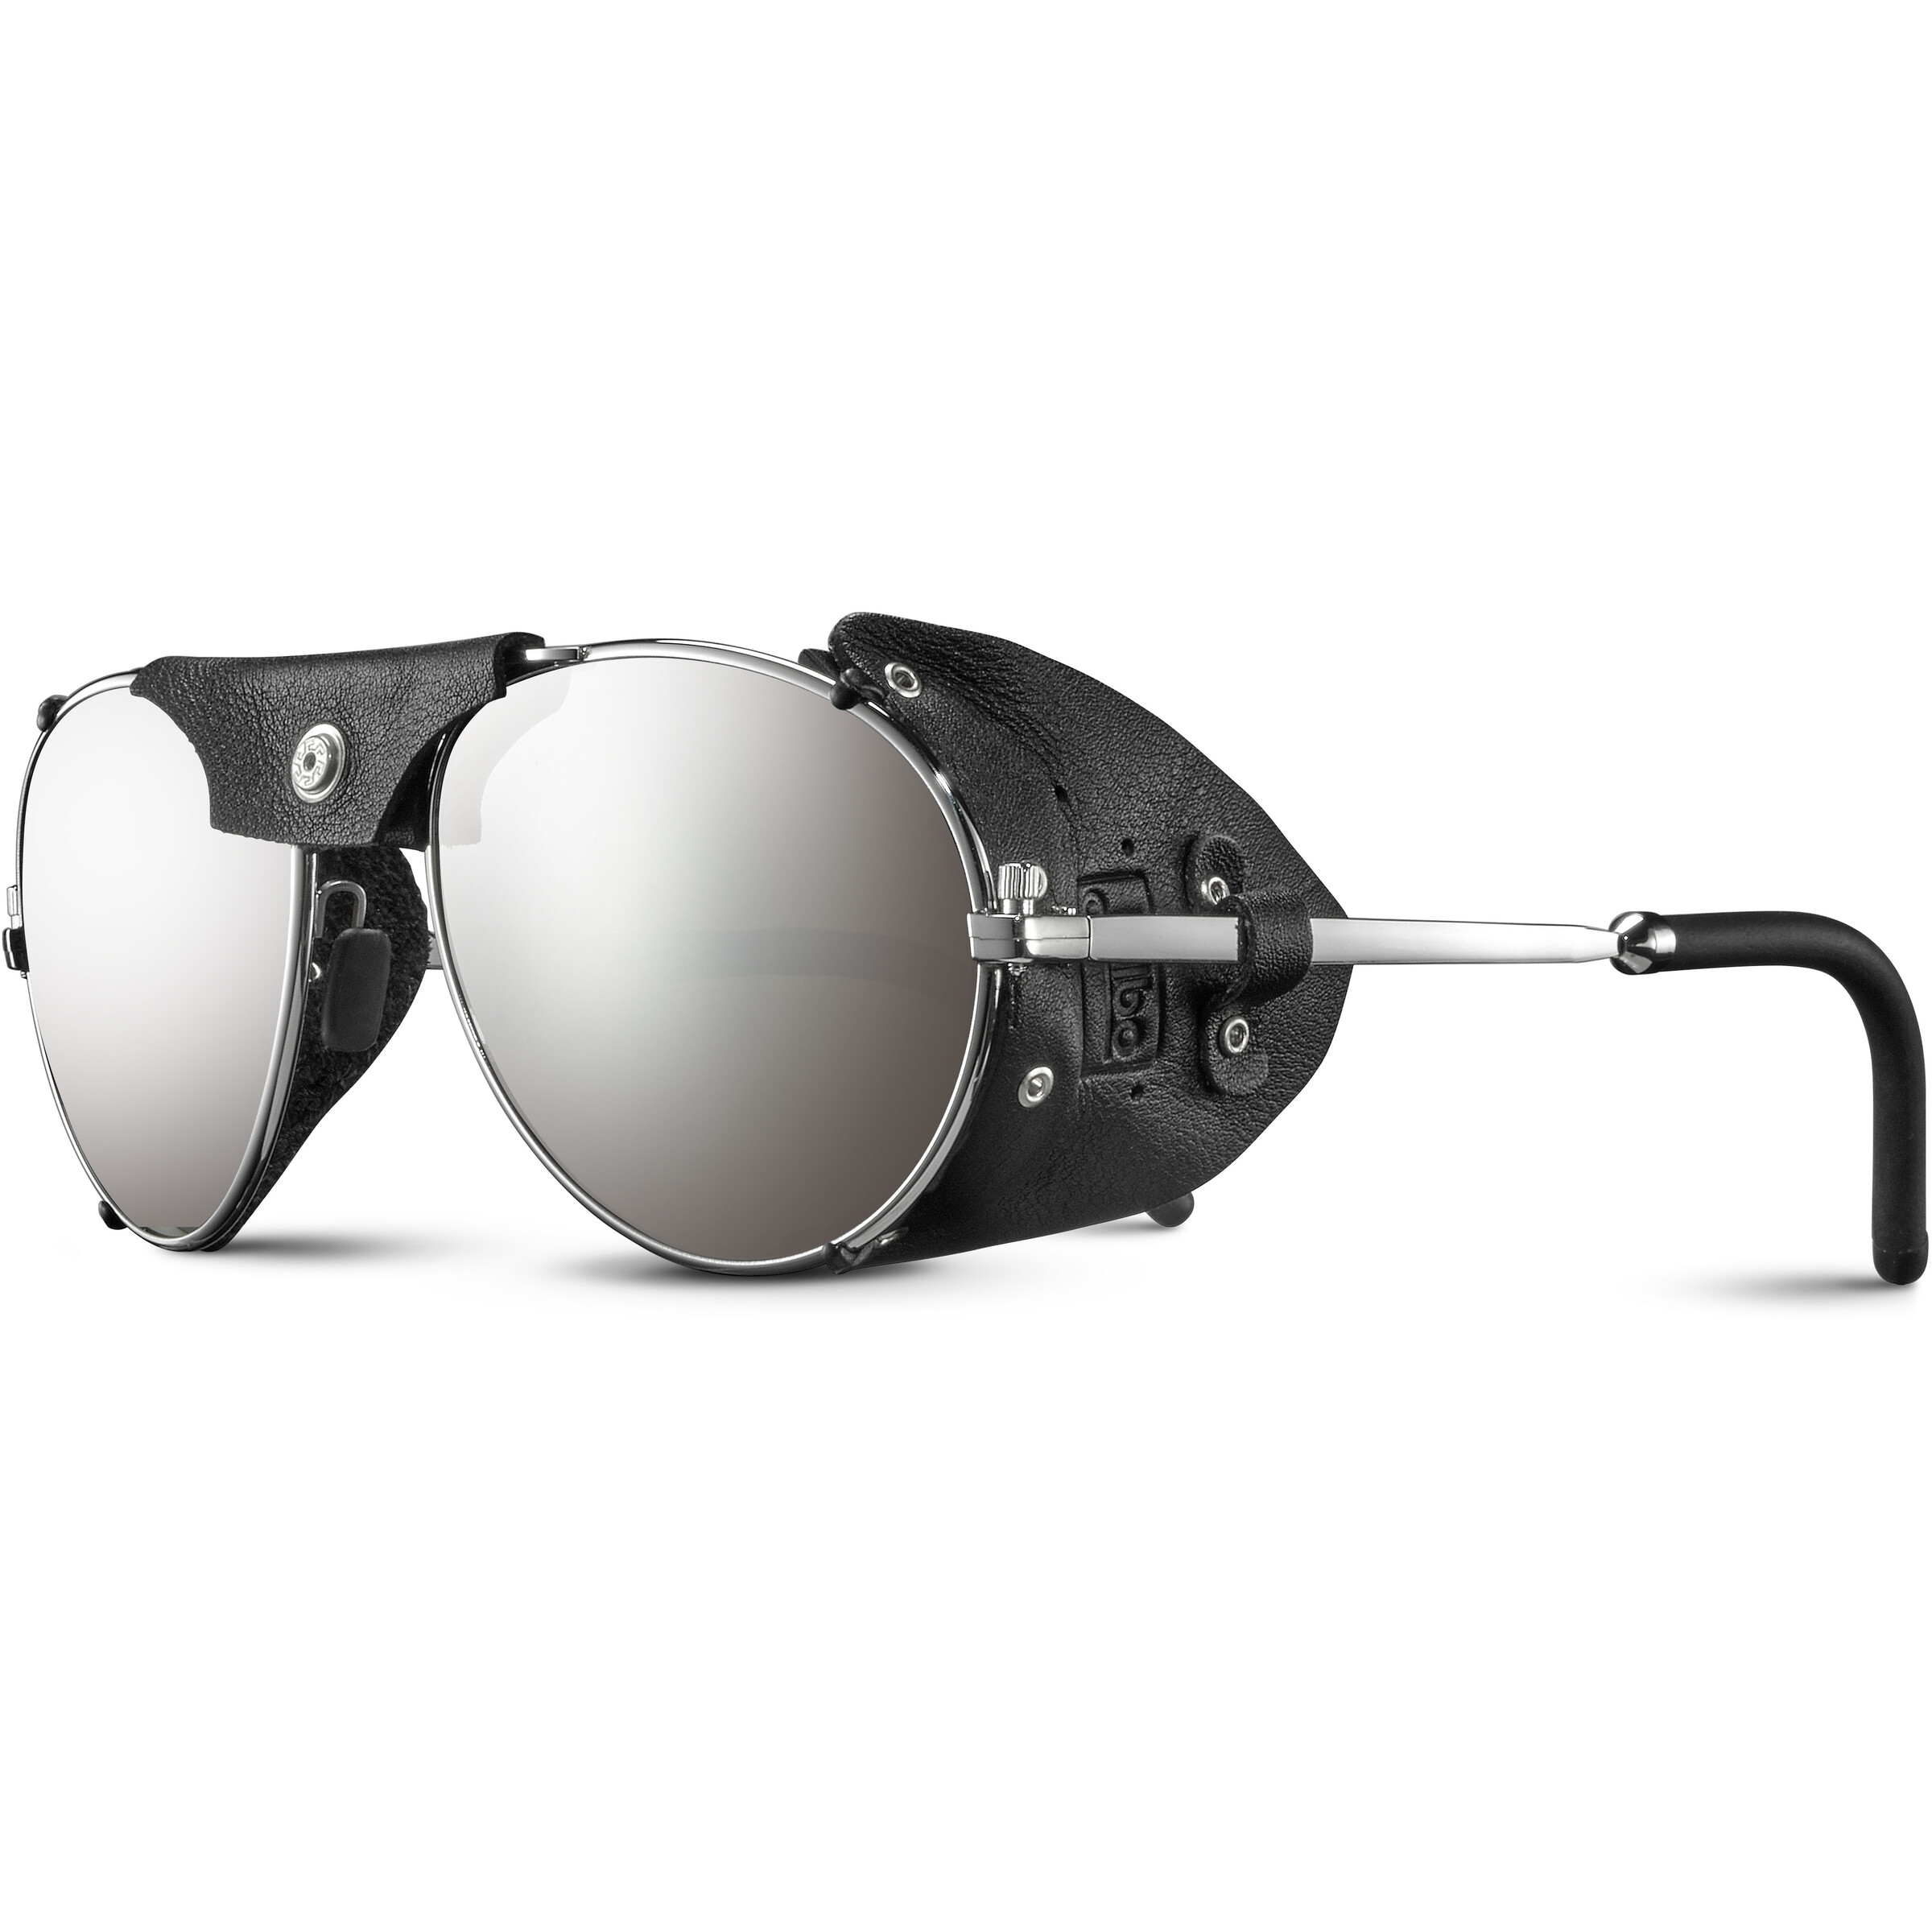 Julbo Cham Spectron 4 Sunglasses silver/Black